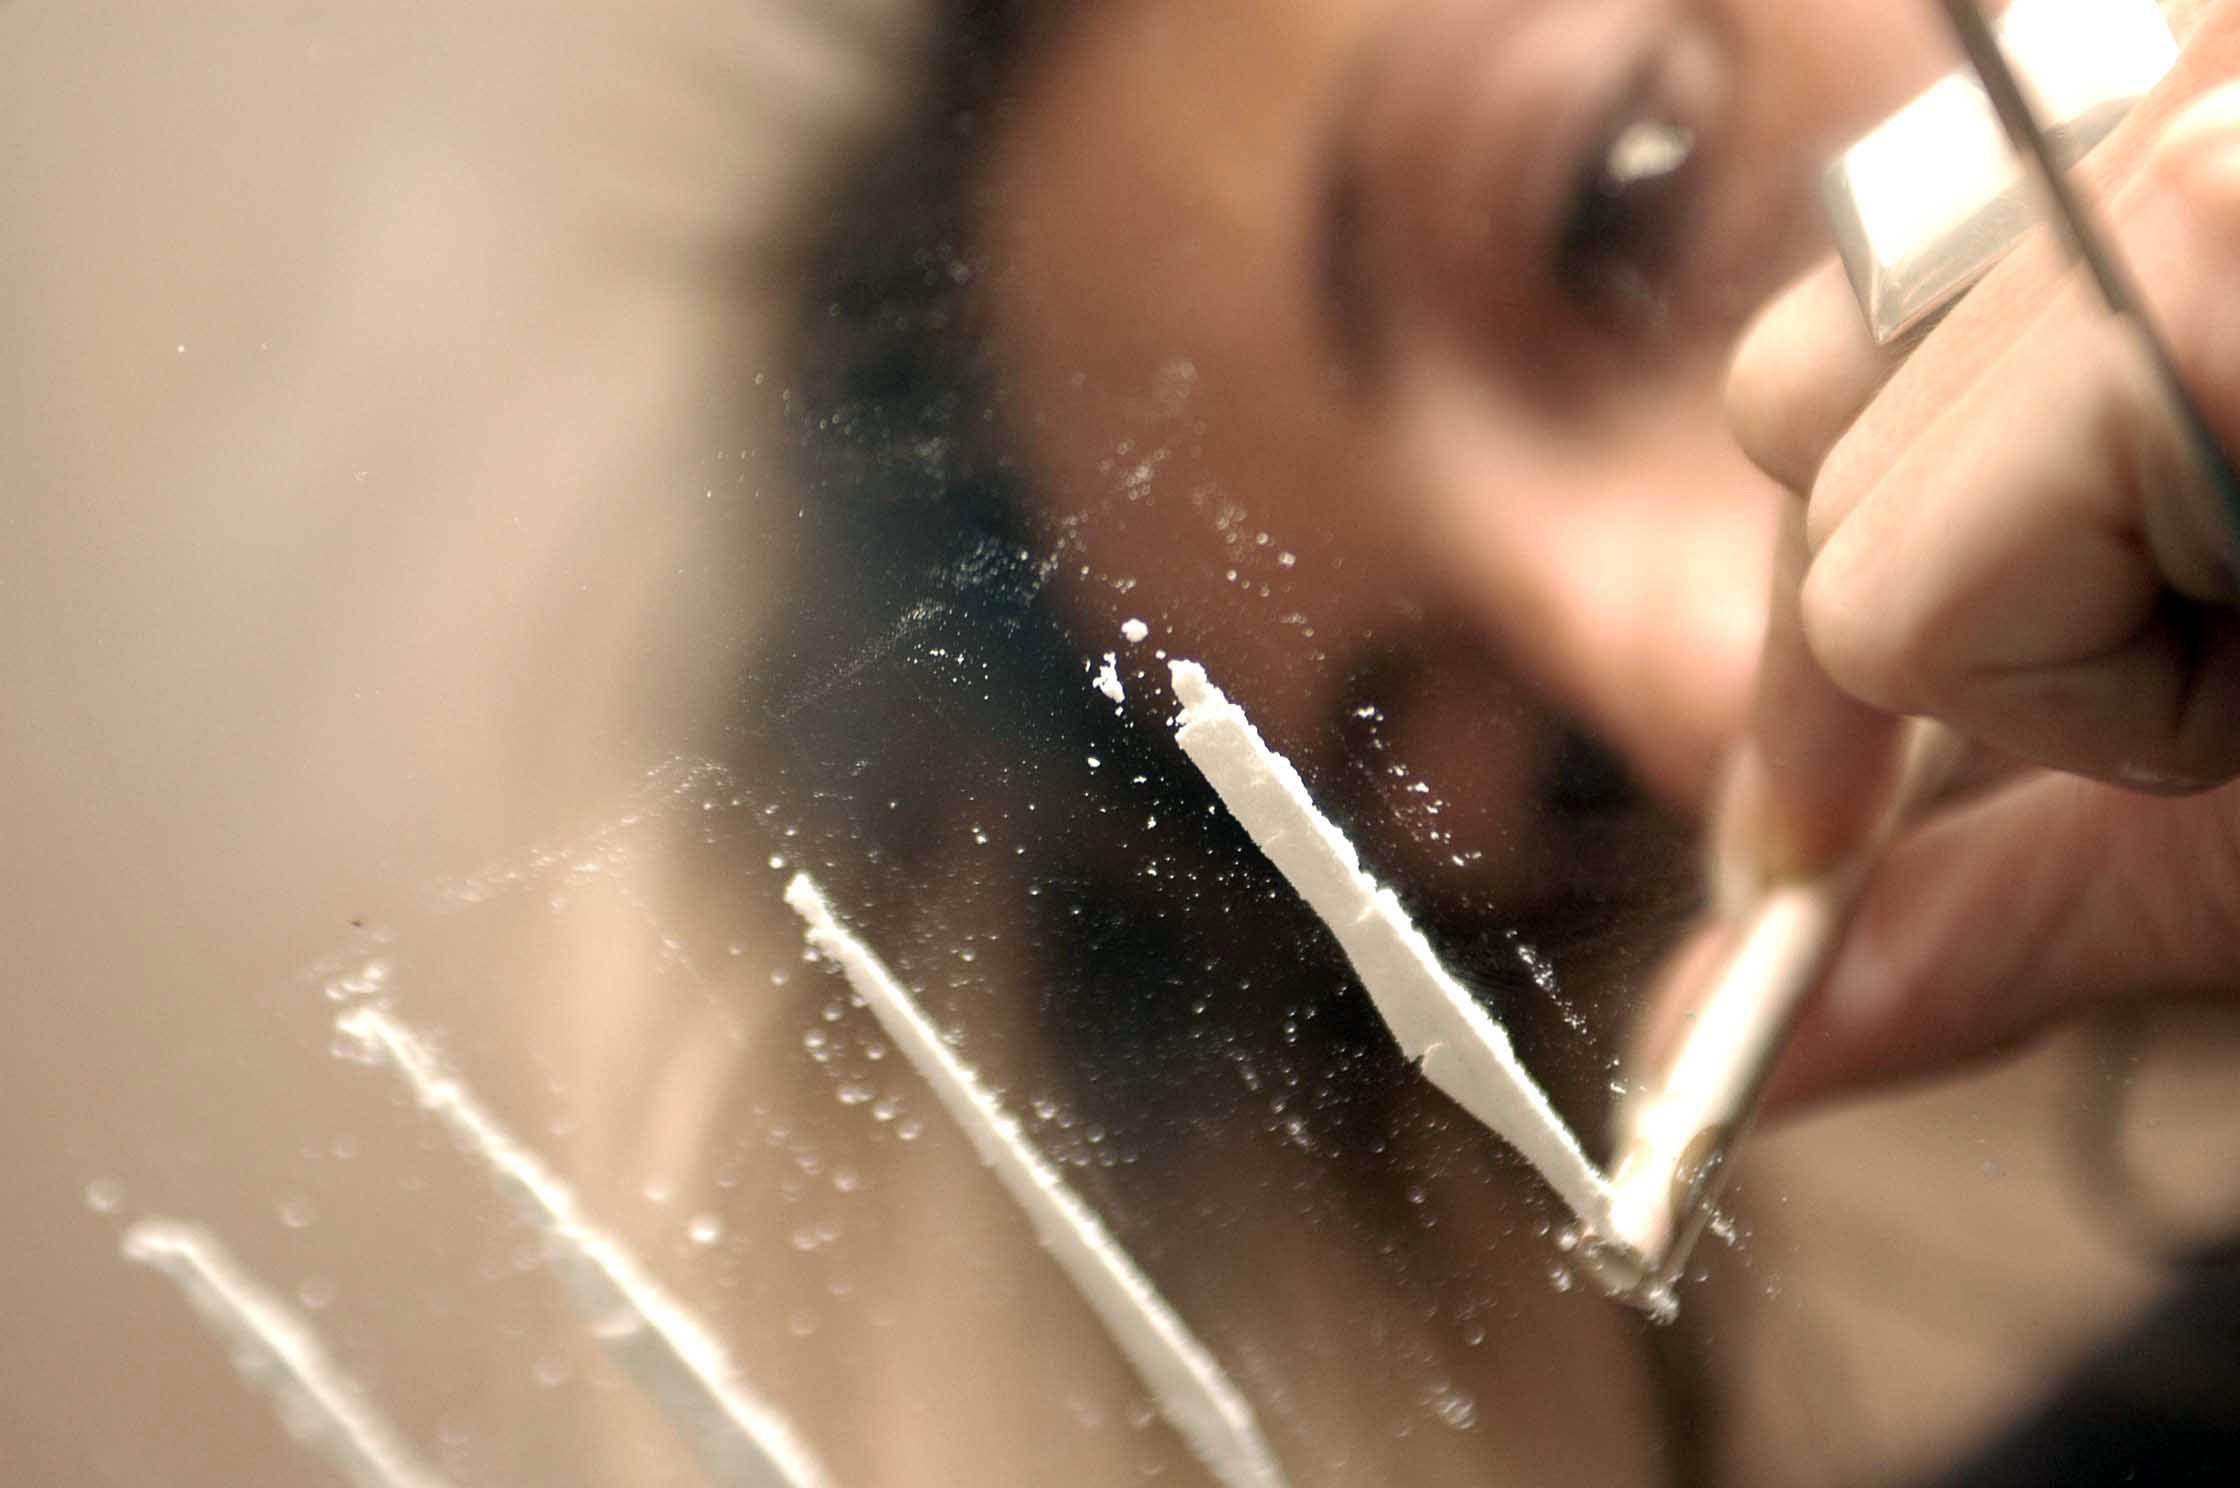 Droga - tra giovani italiani cresce uso sostanze psicoattive e consumo cocaina